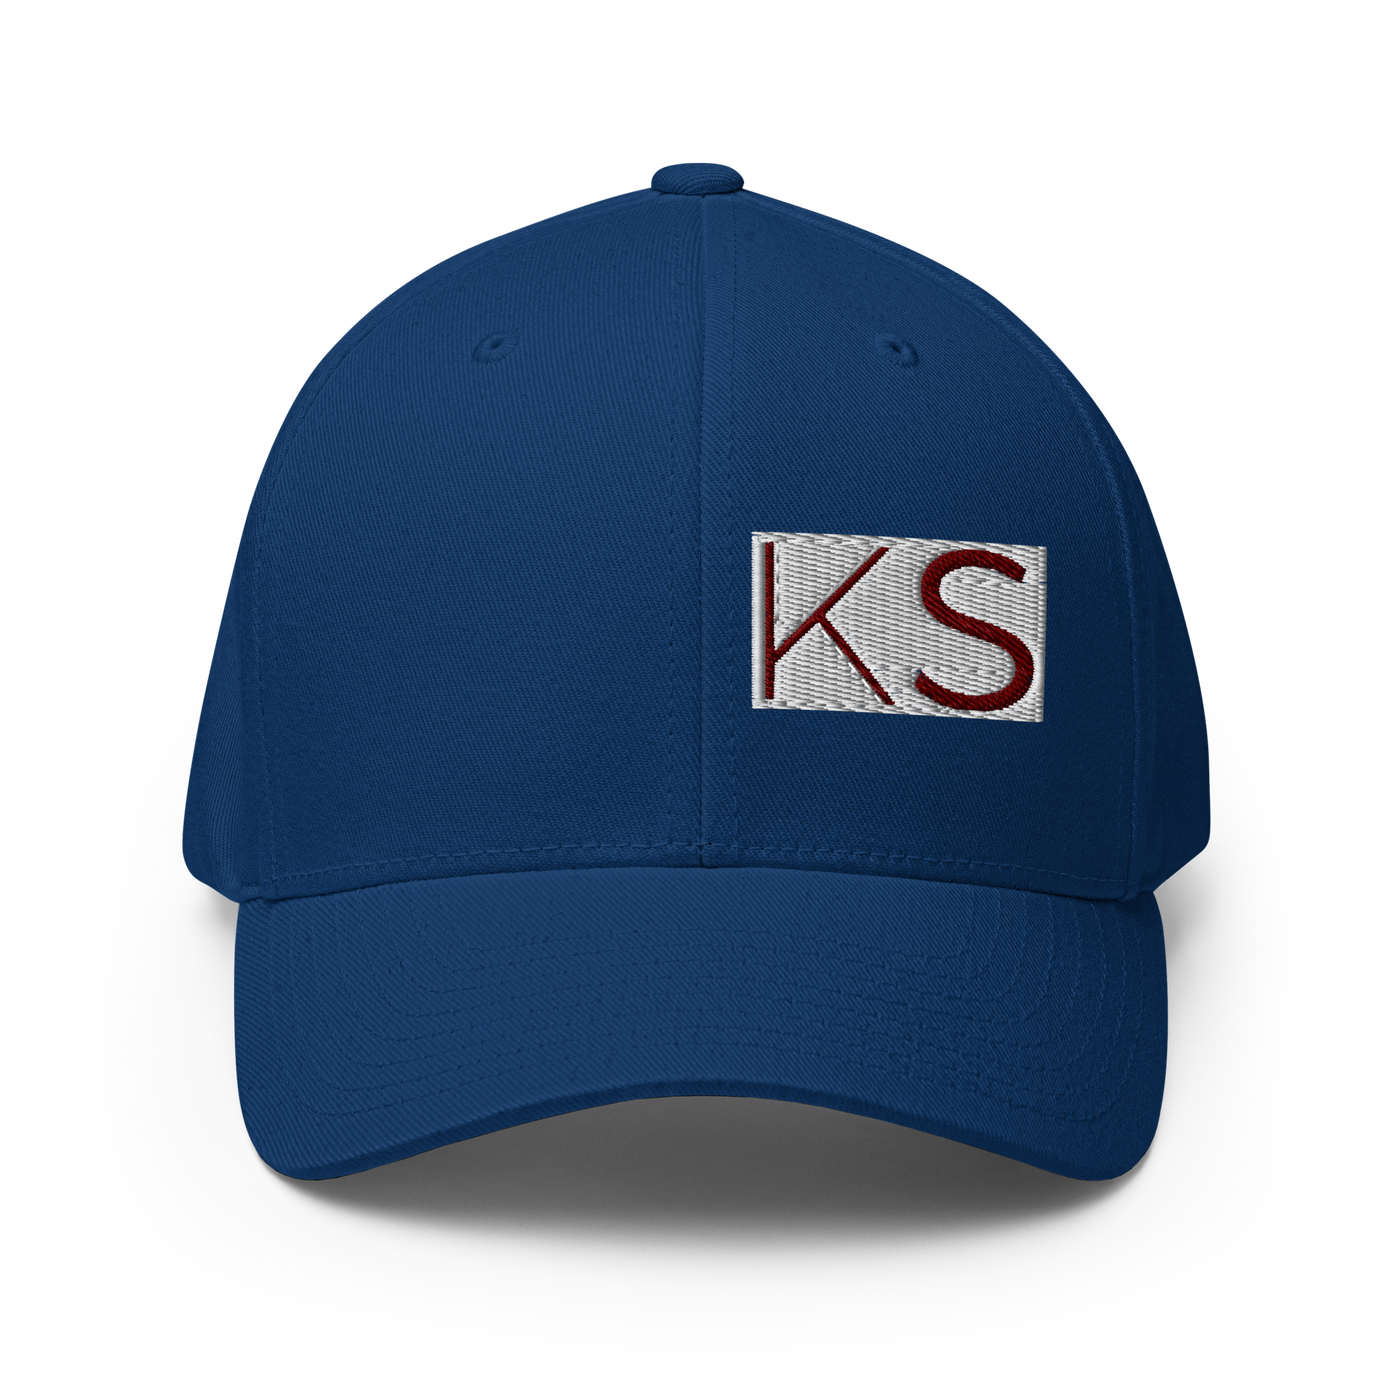 Original Boxed KS Structured Twill Cap